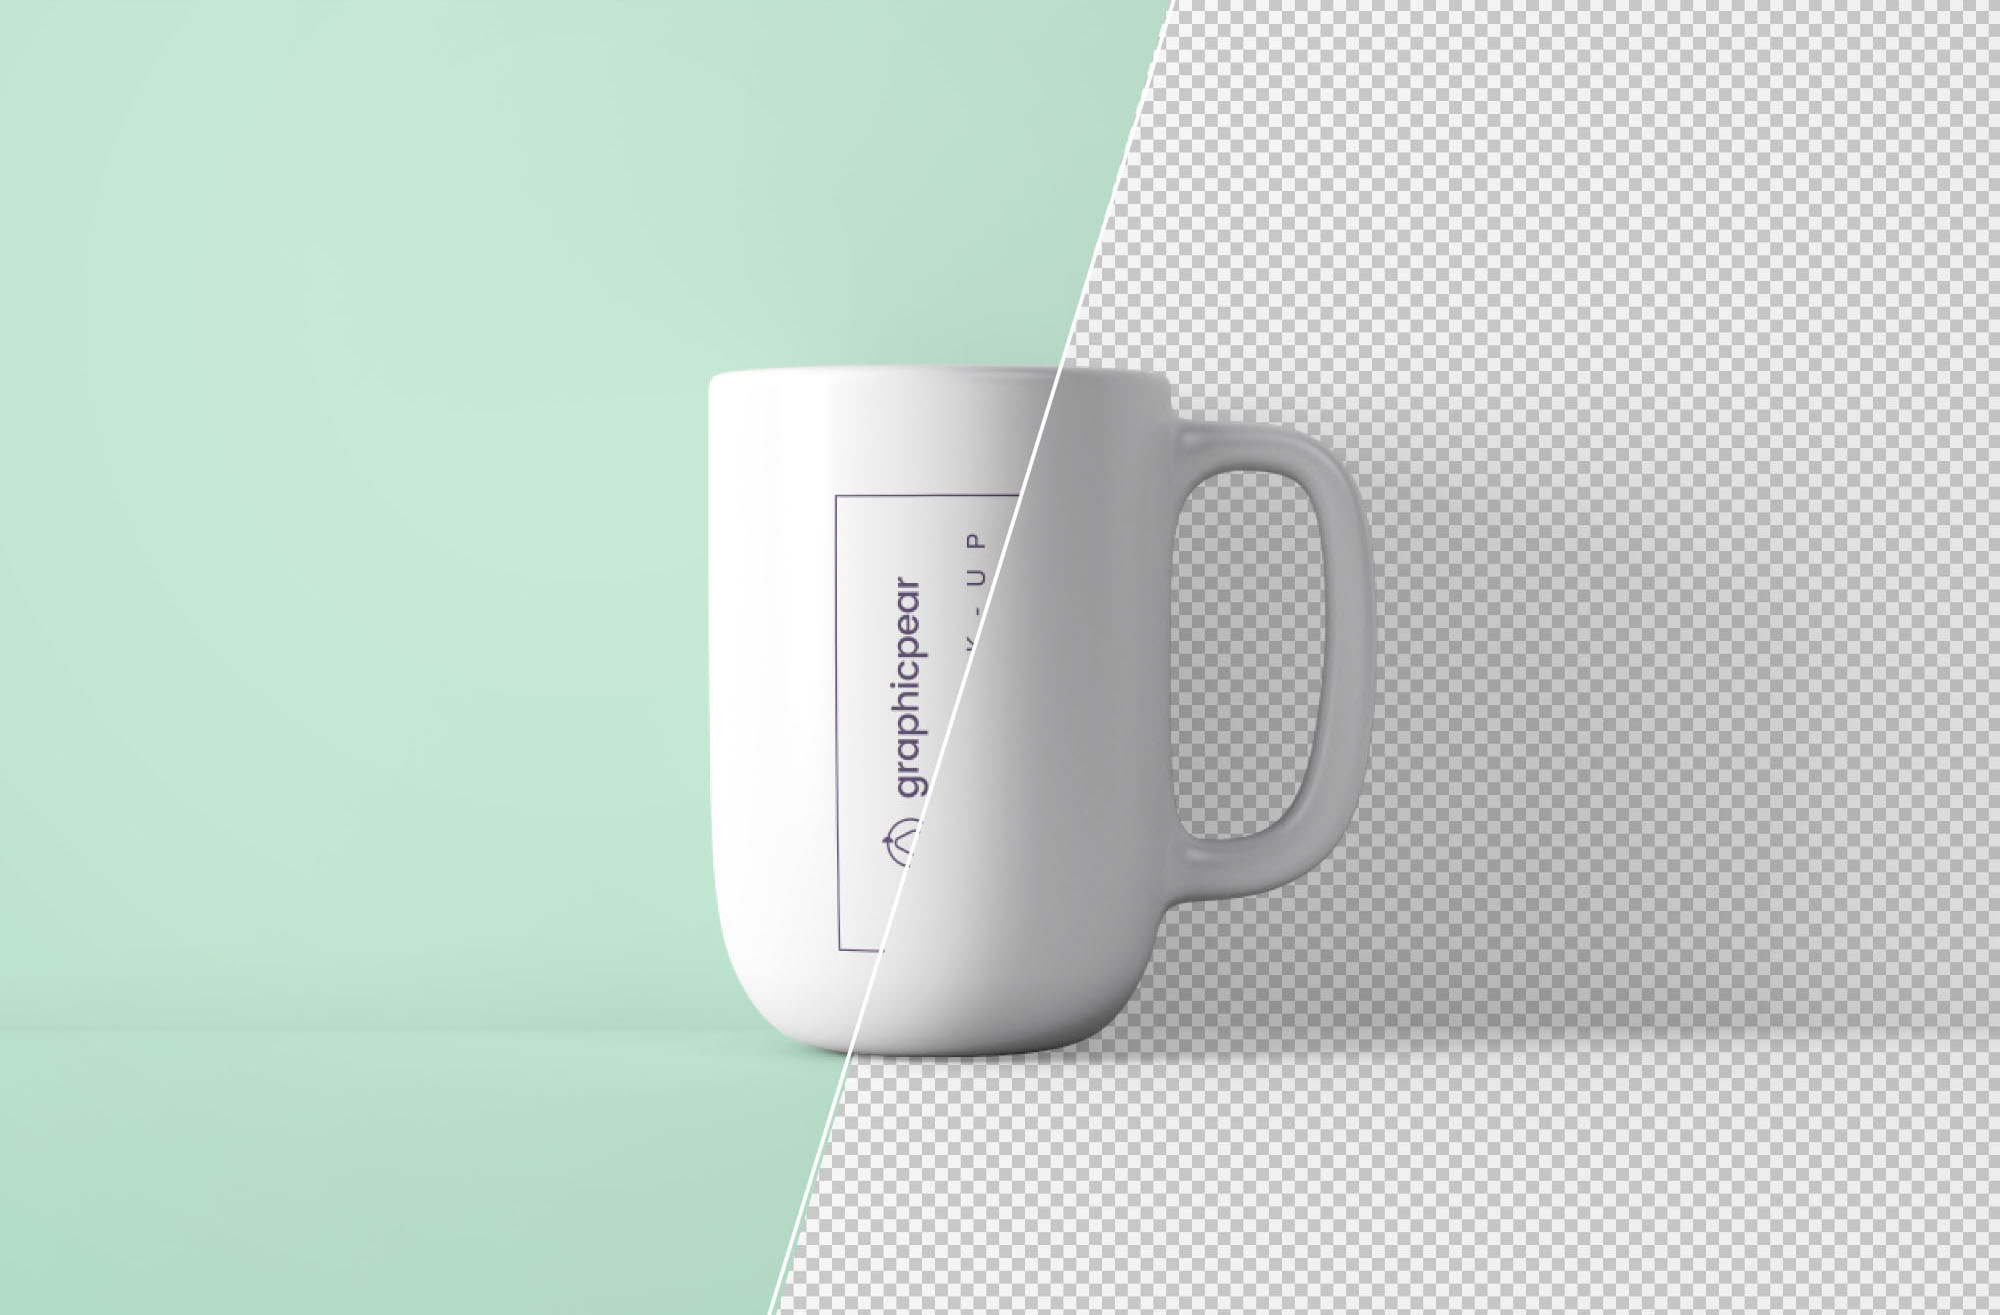 咖啡陶瓷杯外观设计PSD样机模板 Minimal Coffee Mug Mockup PSD插图(1)